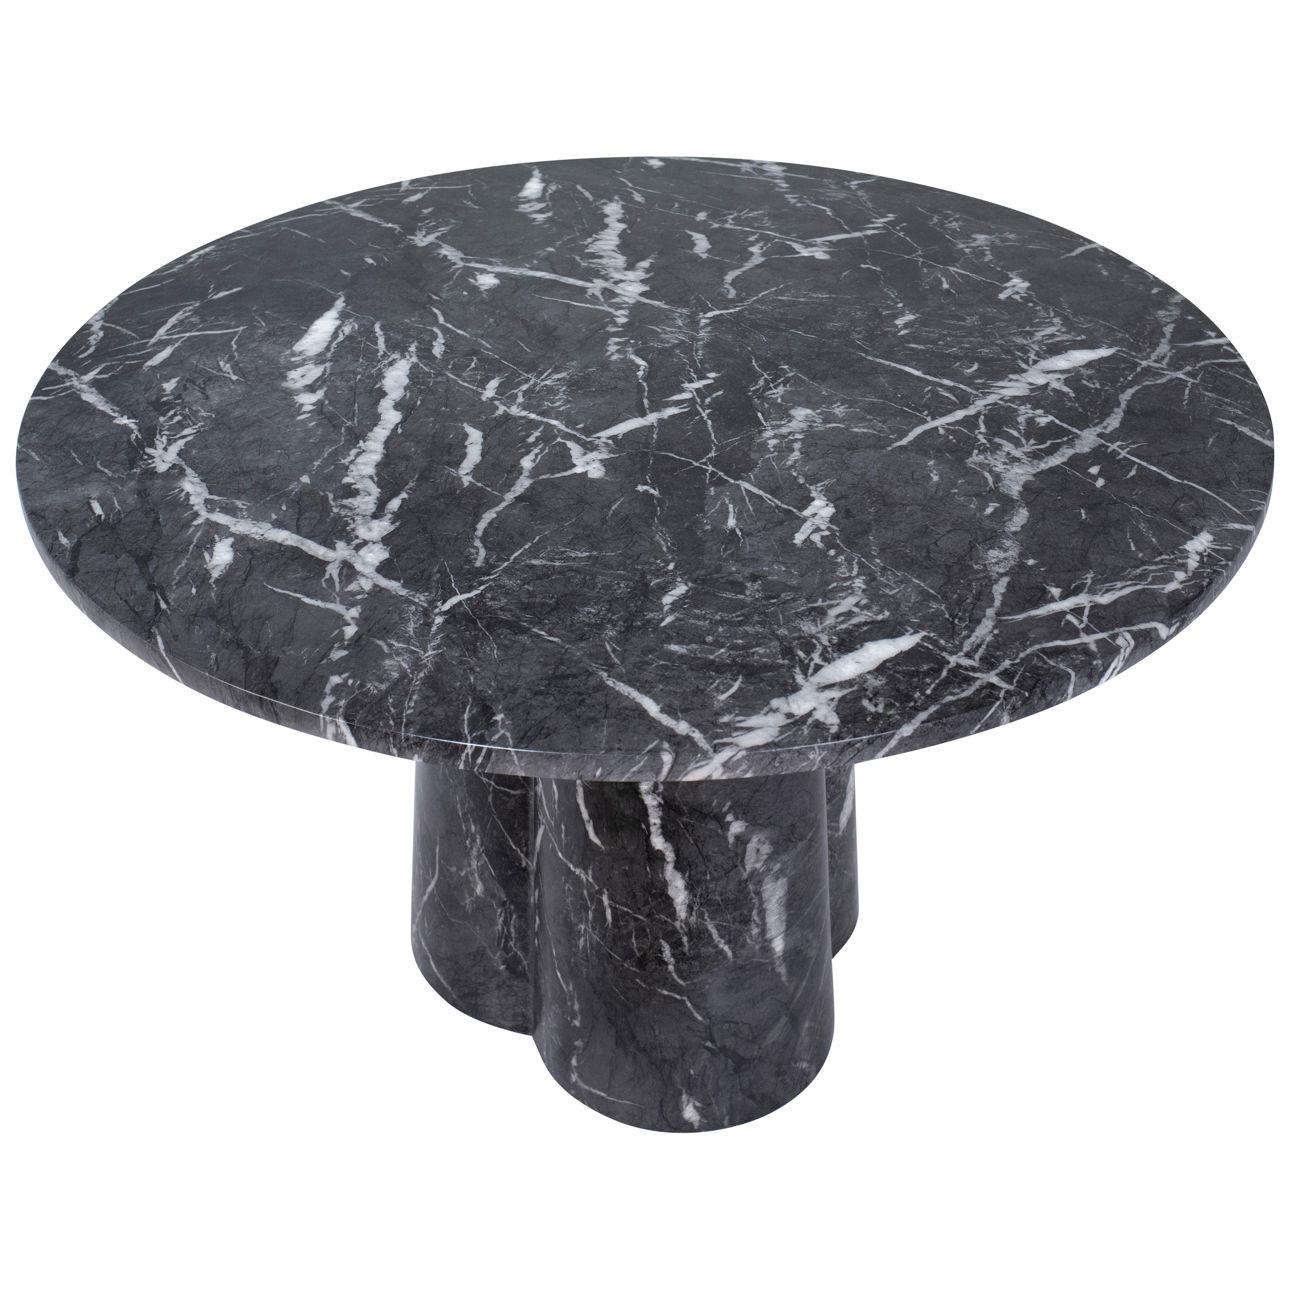 Cette table de salle à manger est réalisée en marbre noir fini sur béton à l'aide d'une technique de transfert d'eau qui met en valeur des veines blanches captivantes. Sa forme ronde repose élégamment sur un socle robuste, alliant une esthétique